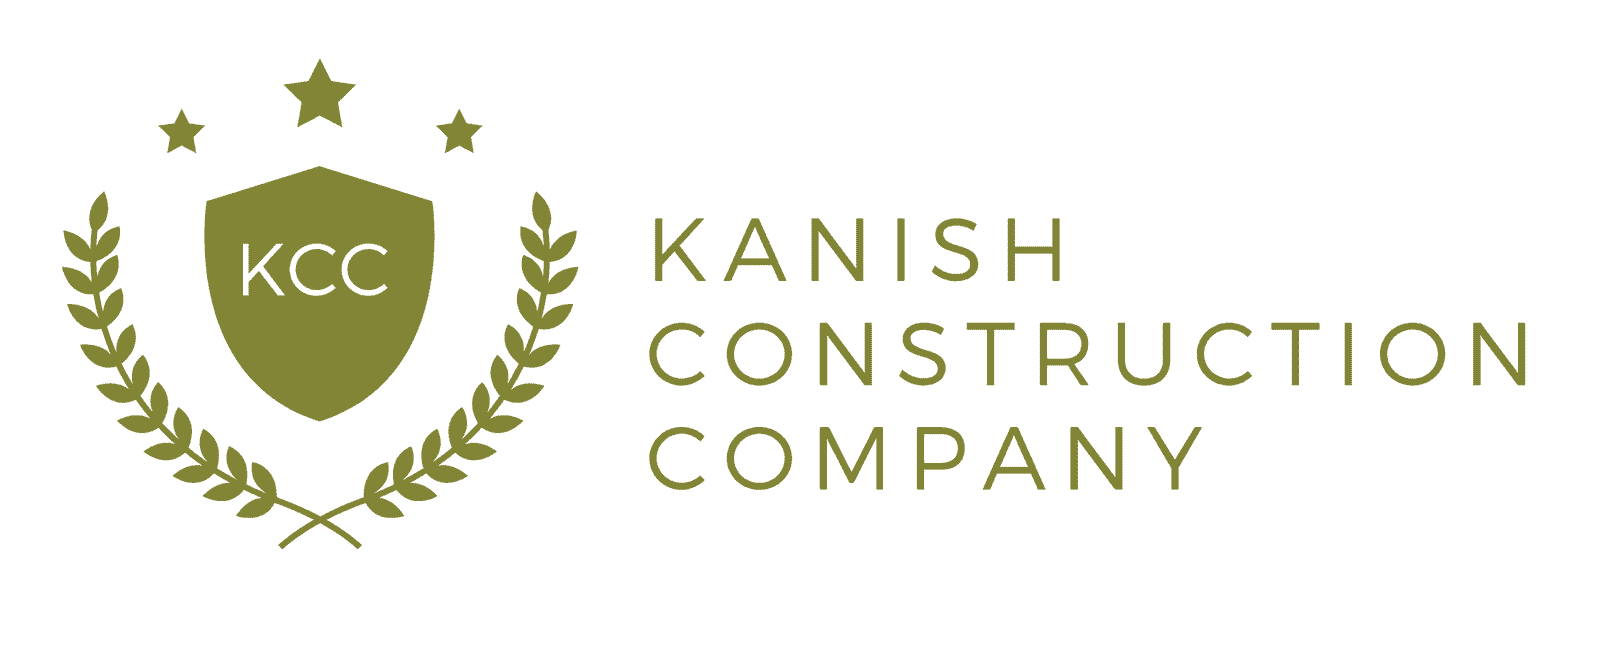 Kanish Construction Company